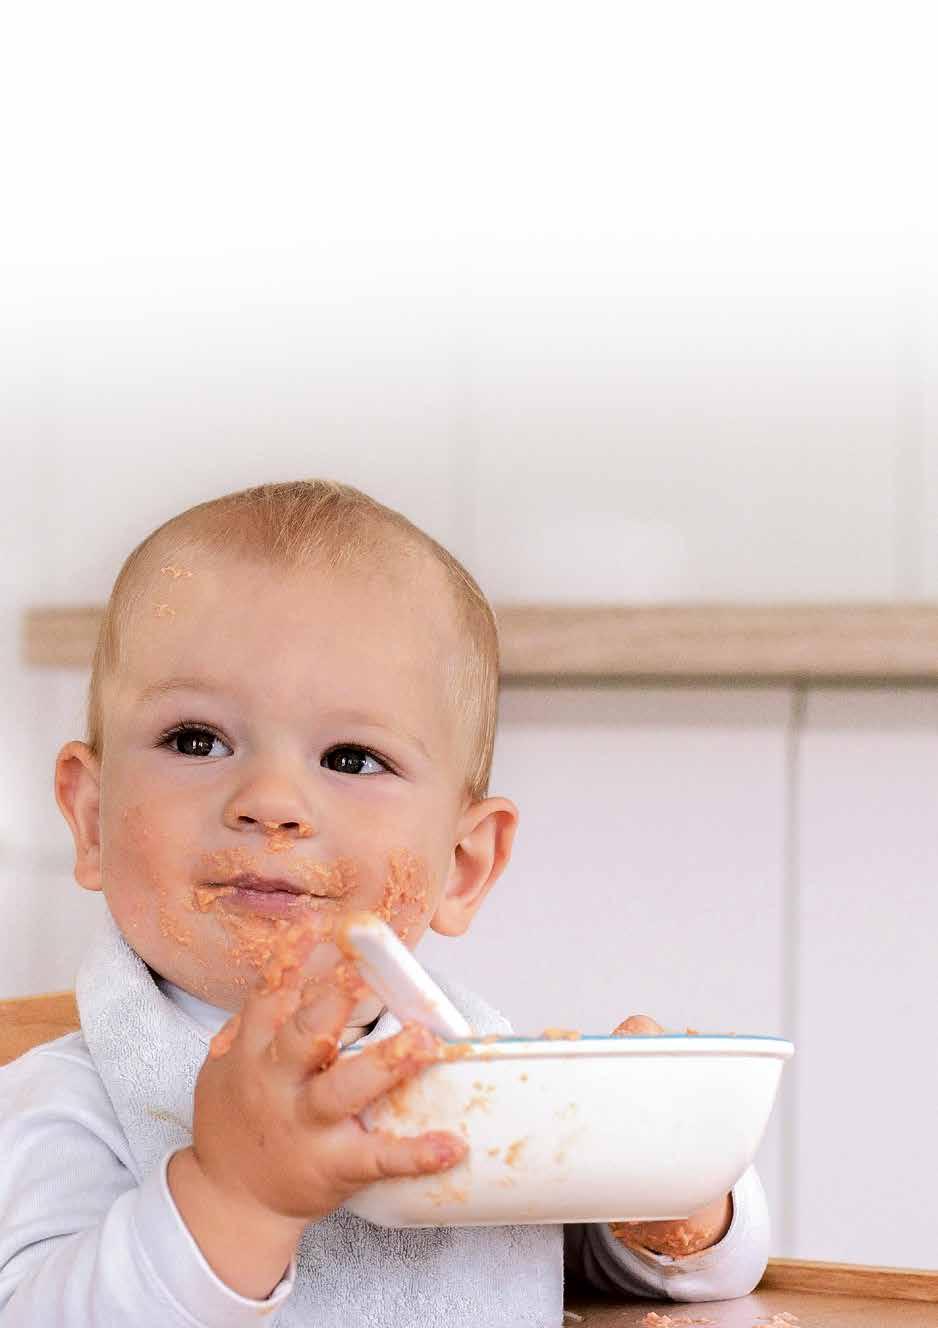 Çocuğunuzun yemek planına lapa ve/ veya katı yemekler dahil ederken dikkatli davranmanız önem taşır. Çocuğun gelişimine göre 5 ve 7. ay arasında ek gıdaya başlanabilir.